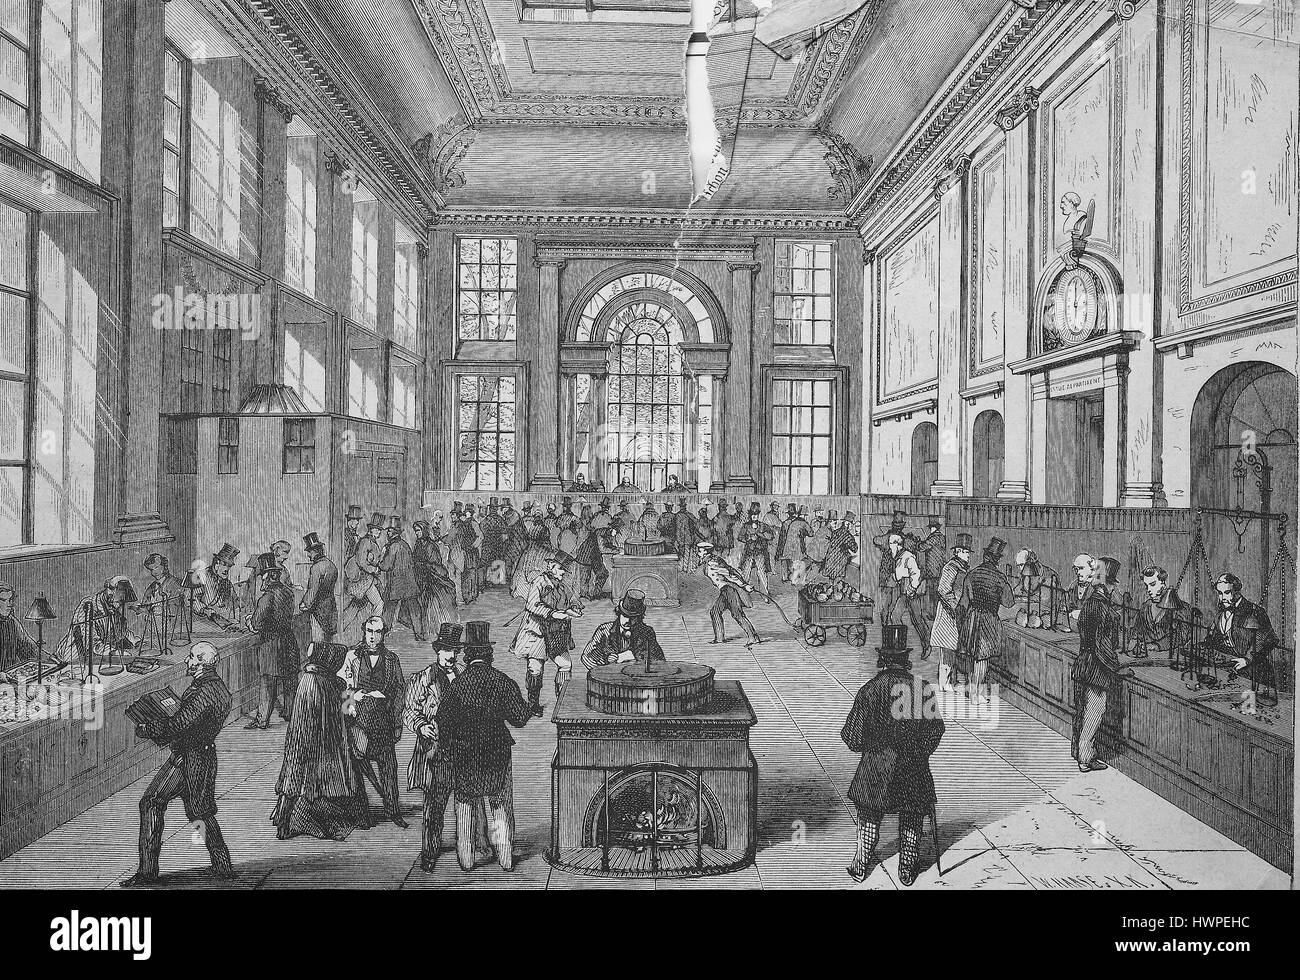 Le paiement de l'Hôtel de la Banque d'Angleterre, Londres, reproduction d'une gravure originale de l'année 1882, l'amélioration numérique Banque D'Images